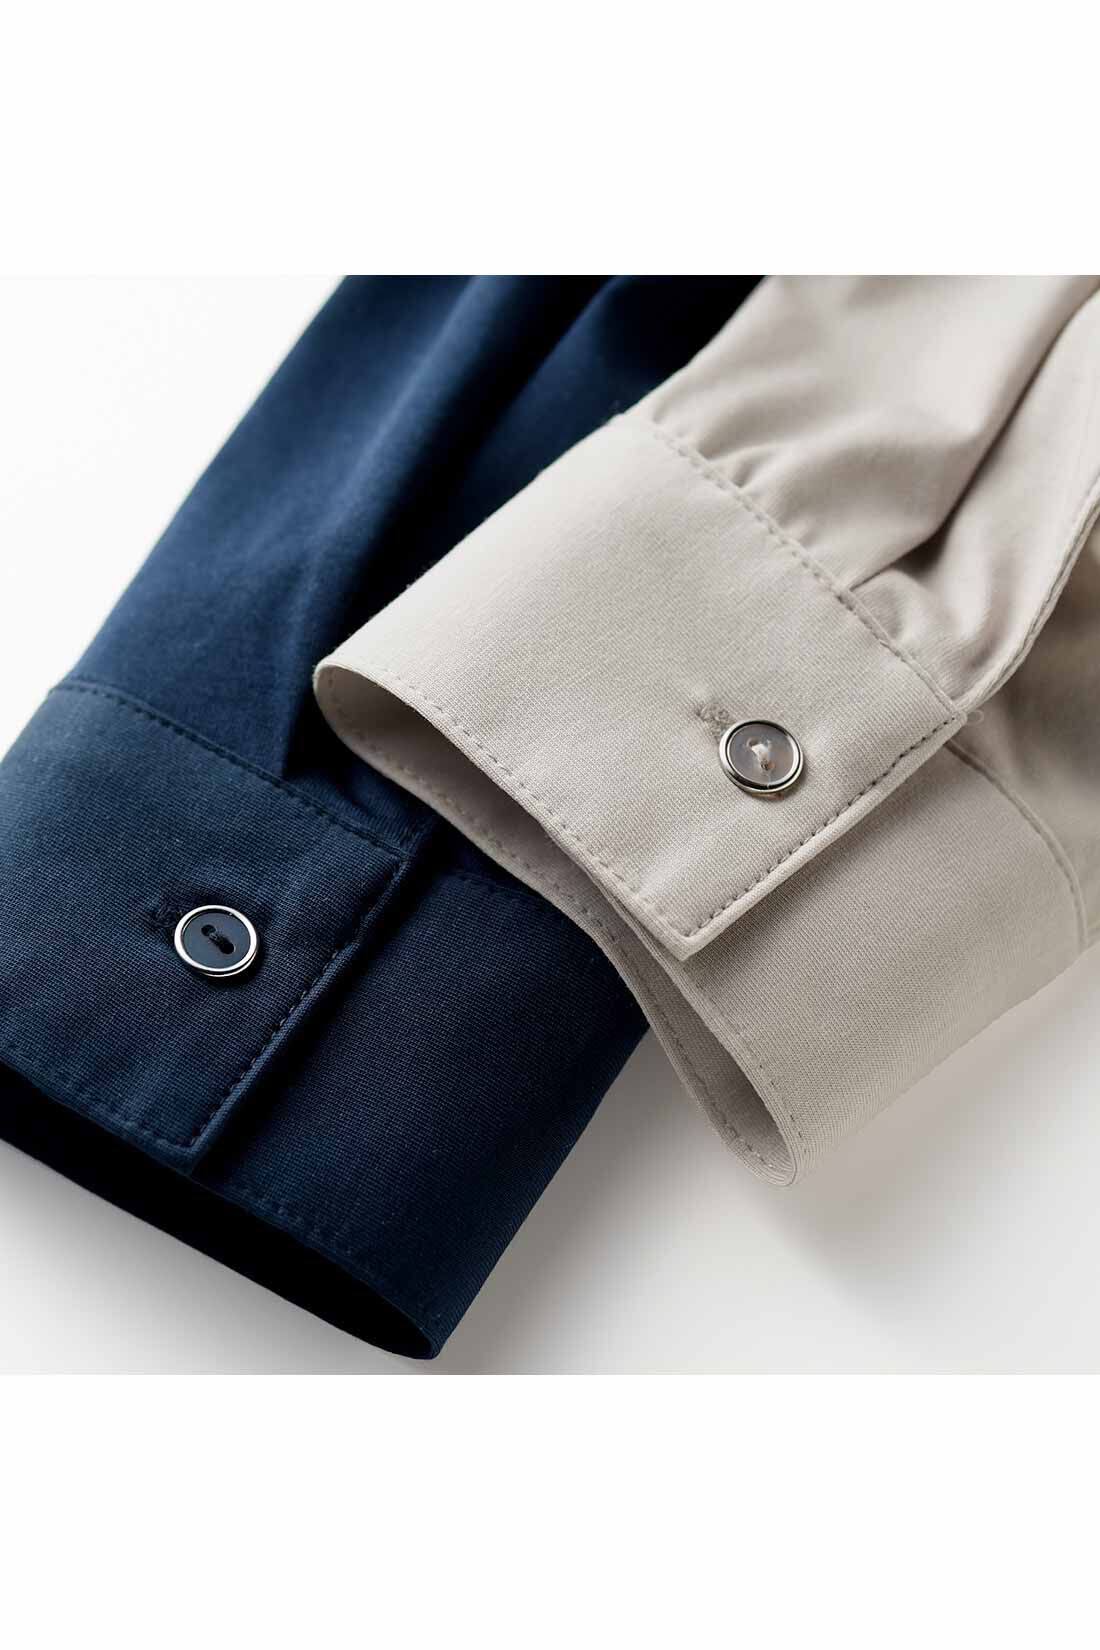 IEDIT|IEDIT[イディット]　らくちんにこなれる すっきり見えデザインのスキッパー美ノビシャツ〈カーキ〉|身生地の色に合わせたボタンは、クール感を高めるシルバーのフレームでリッチな印象。